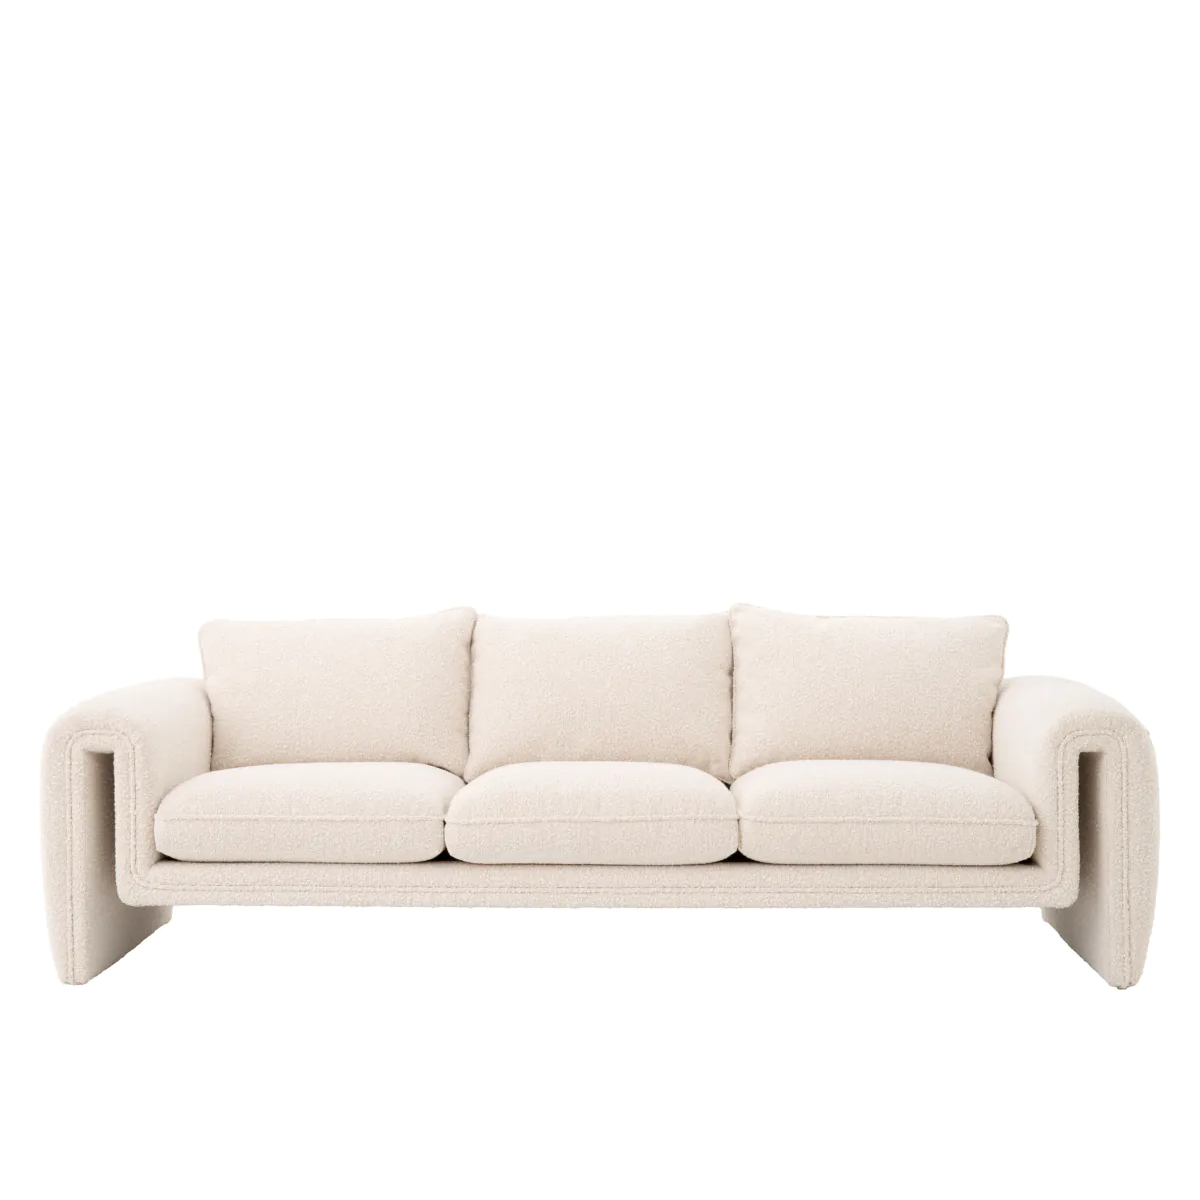 Eichholtz Tondo sofa